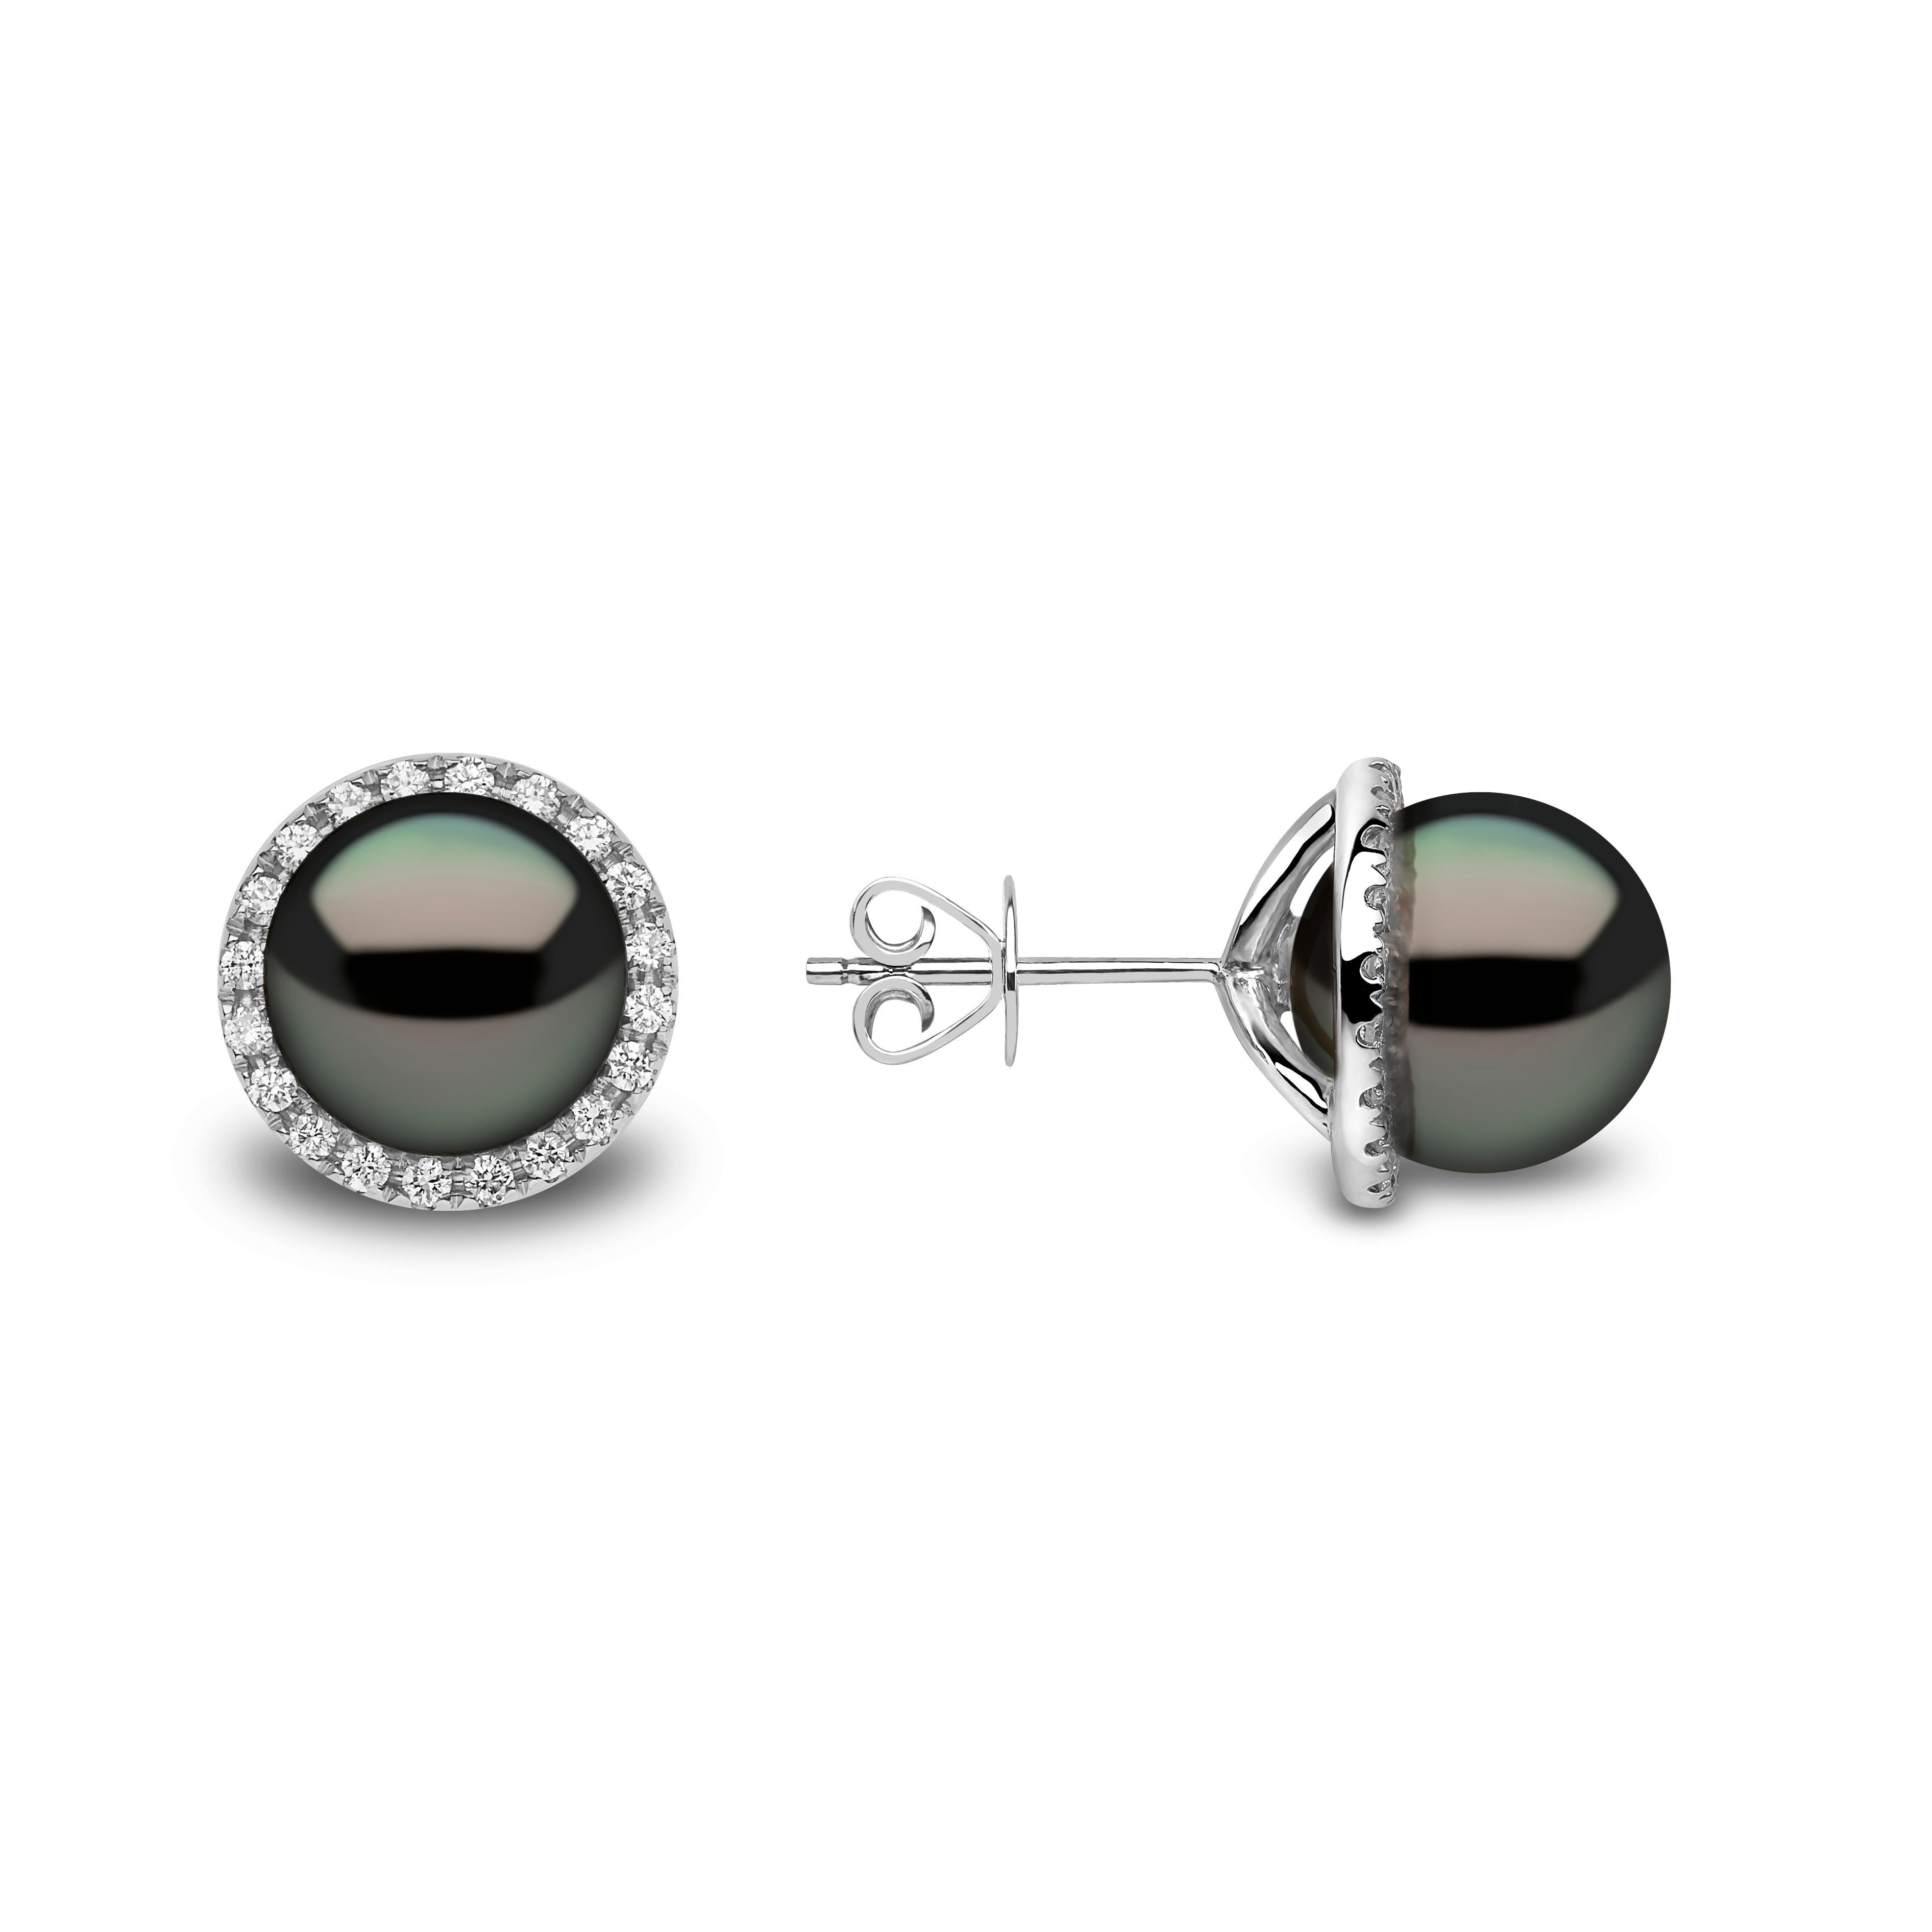 Diese auffälligen Ohrringe von Yoko London sind mit Tahiti-Perlen besetzt, die einem ansonsten klassischen Design eine moderne Note verleihen. Diese eleganten Ohrringe wurden in unserem Londoner Atelier makellos gefertigt und lassen sich sowohl mit